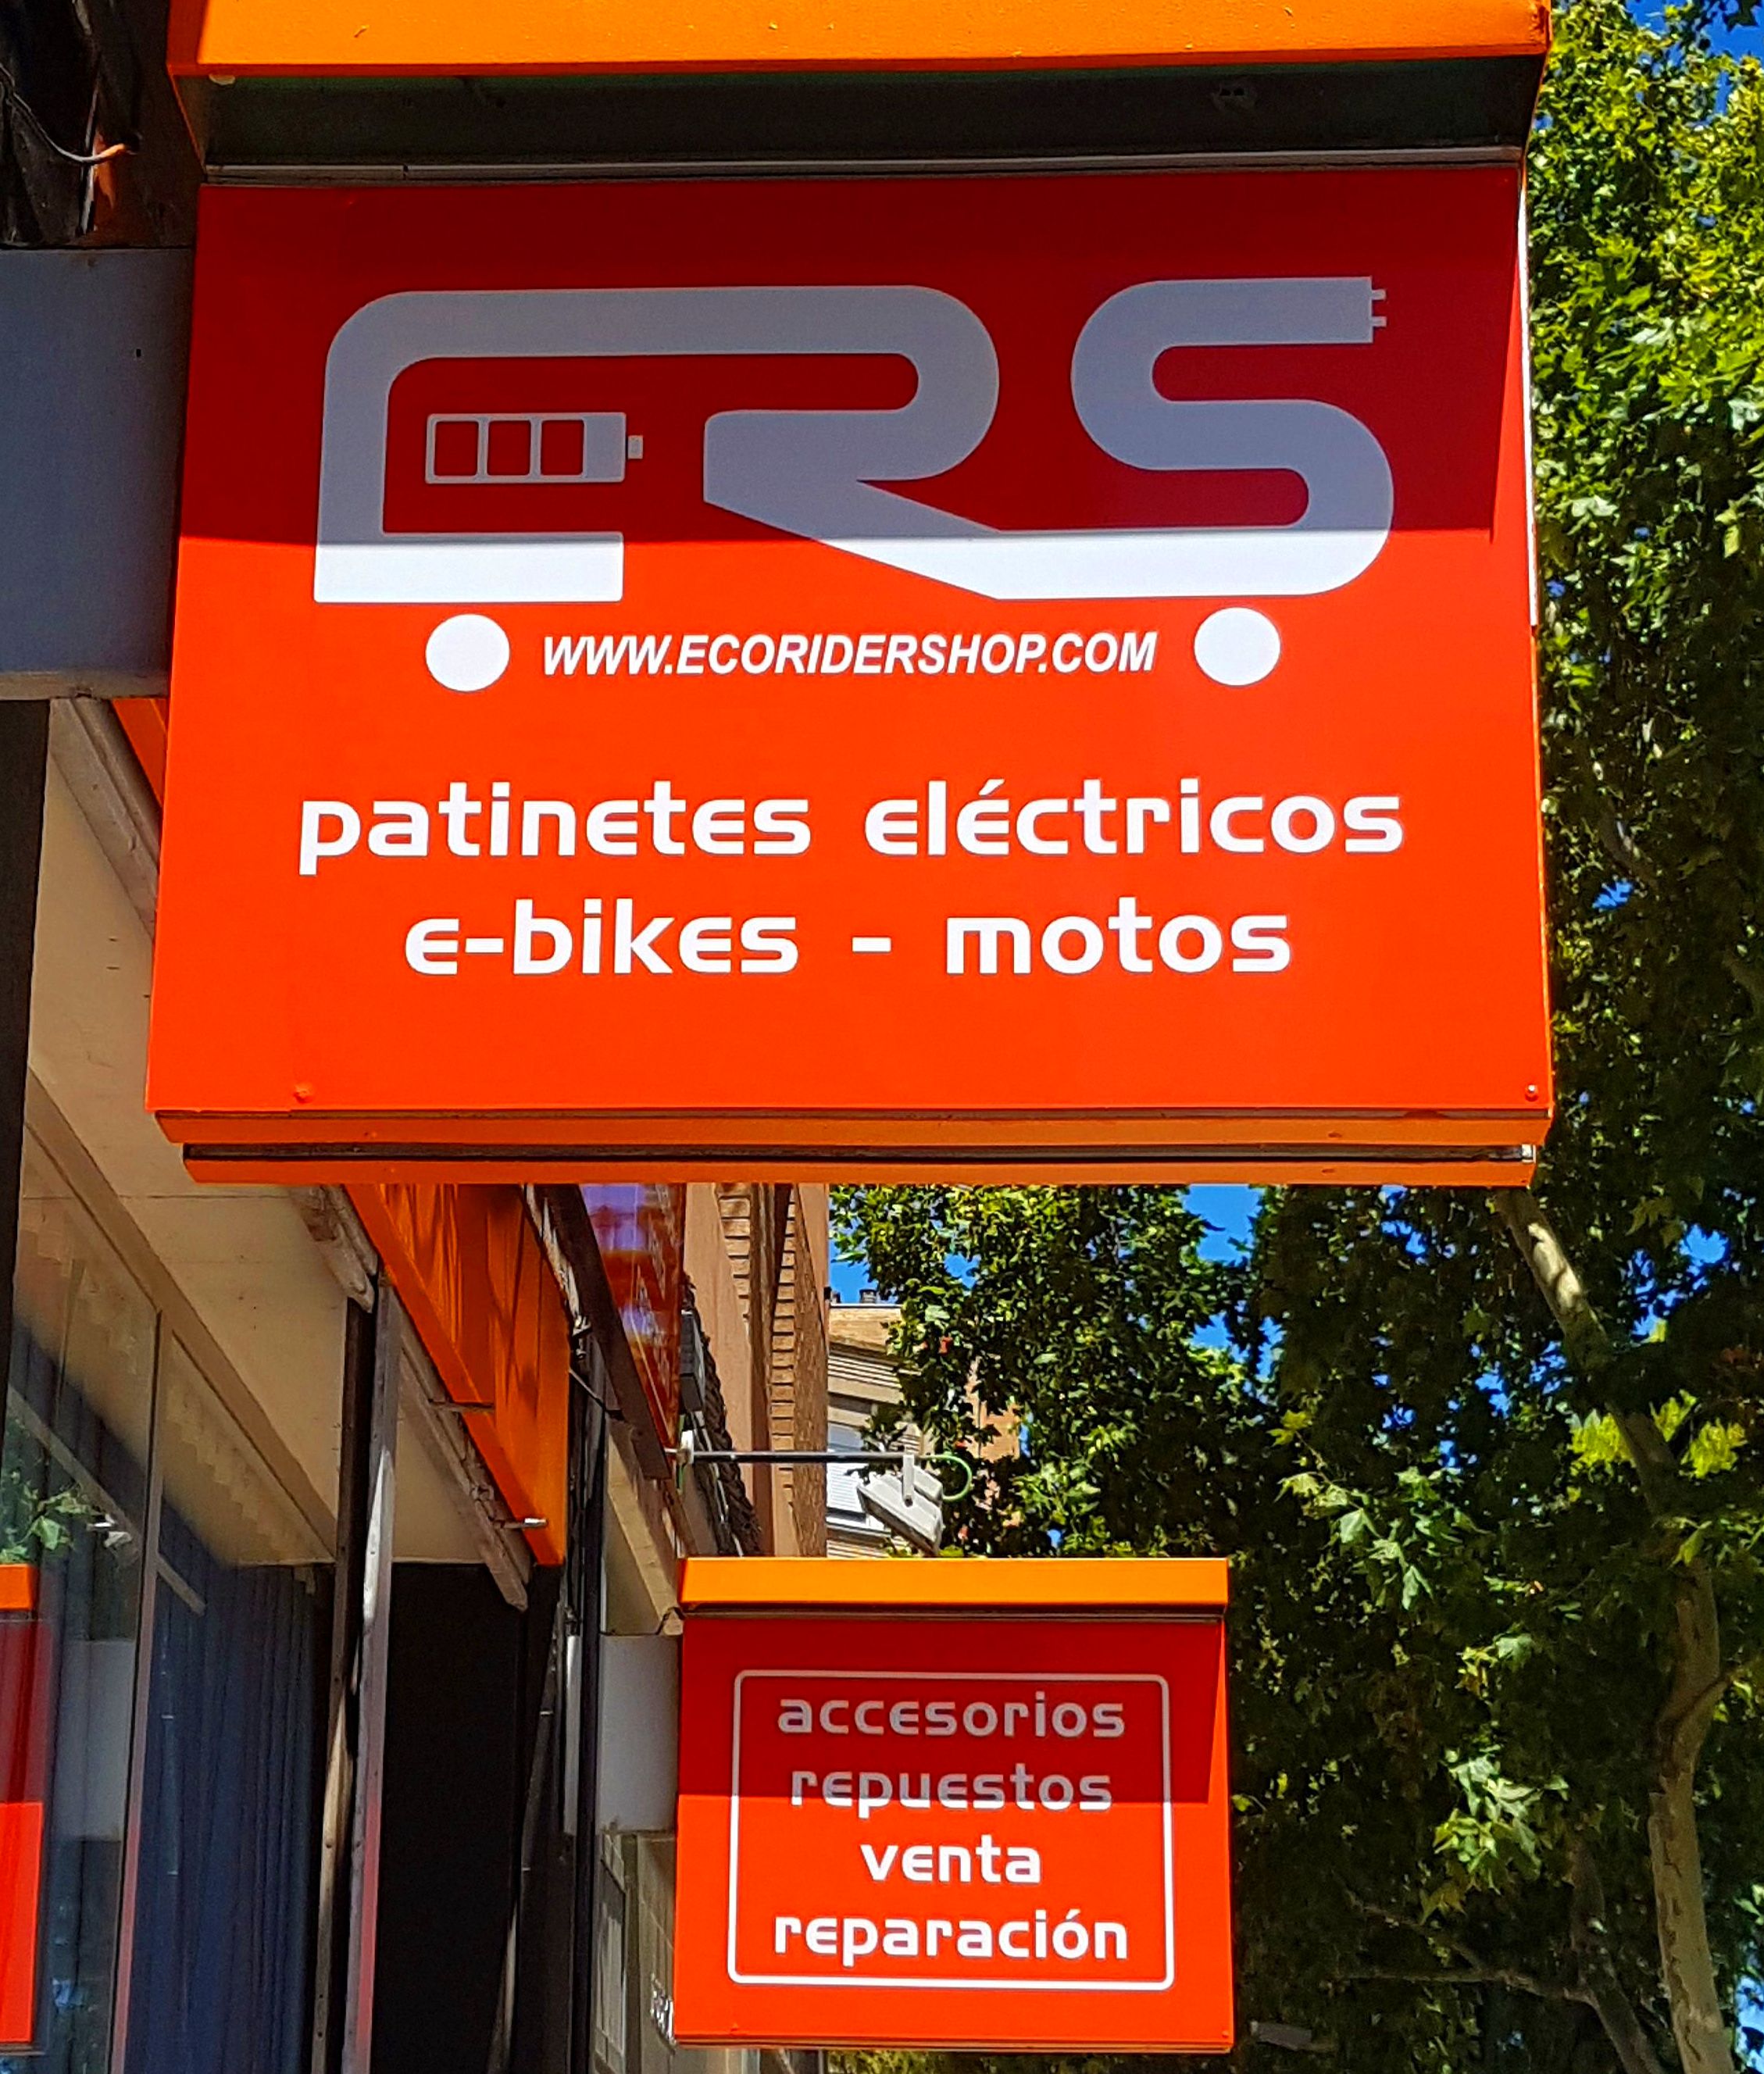 Taller de reparación y venta en Zaragoza de patinetes eléctricos y bicicletas